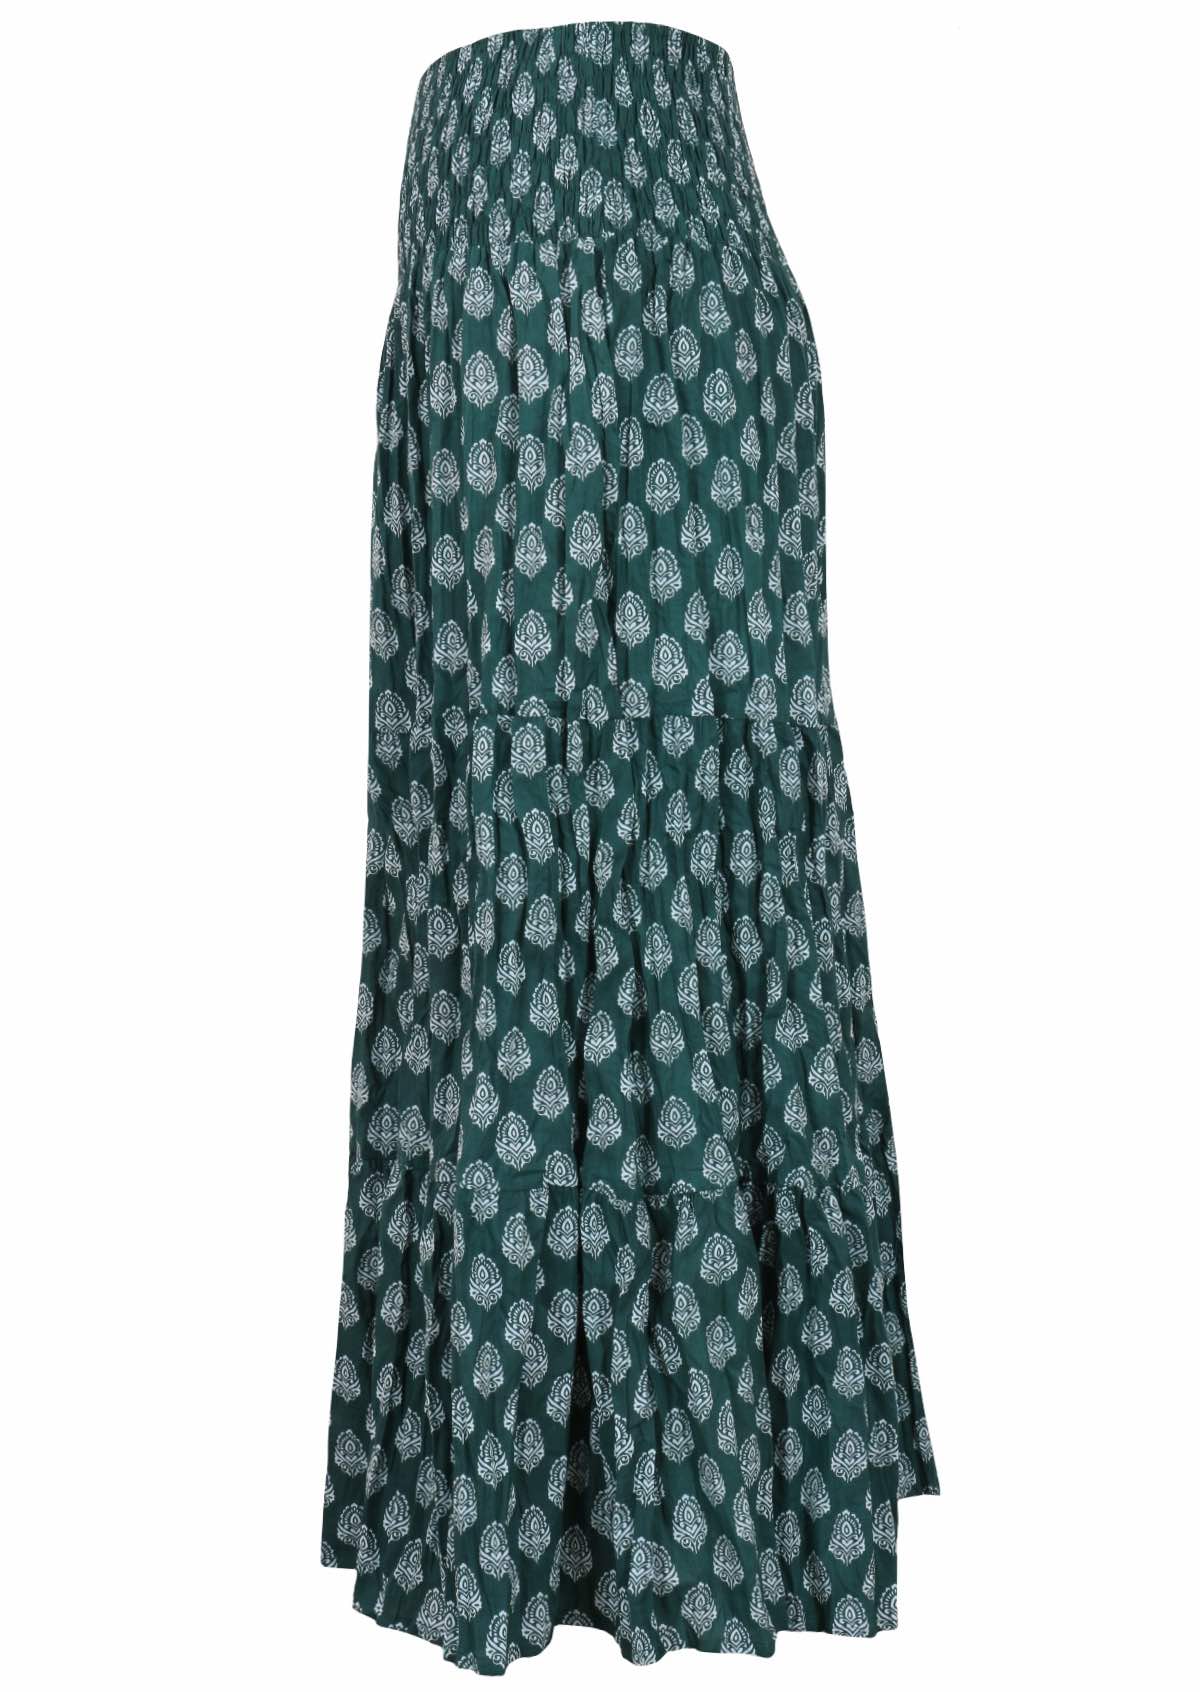 100% cotton maxi skirt with white pendant print on dark green base